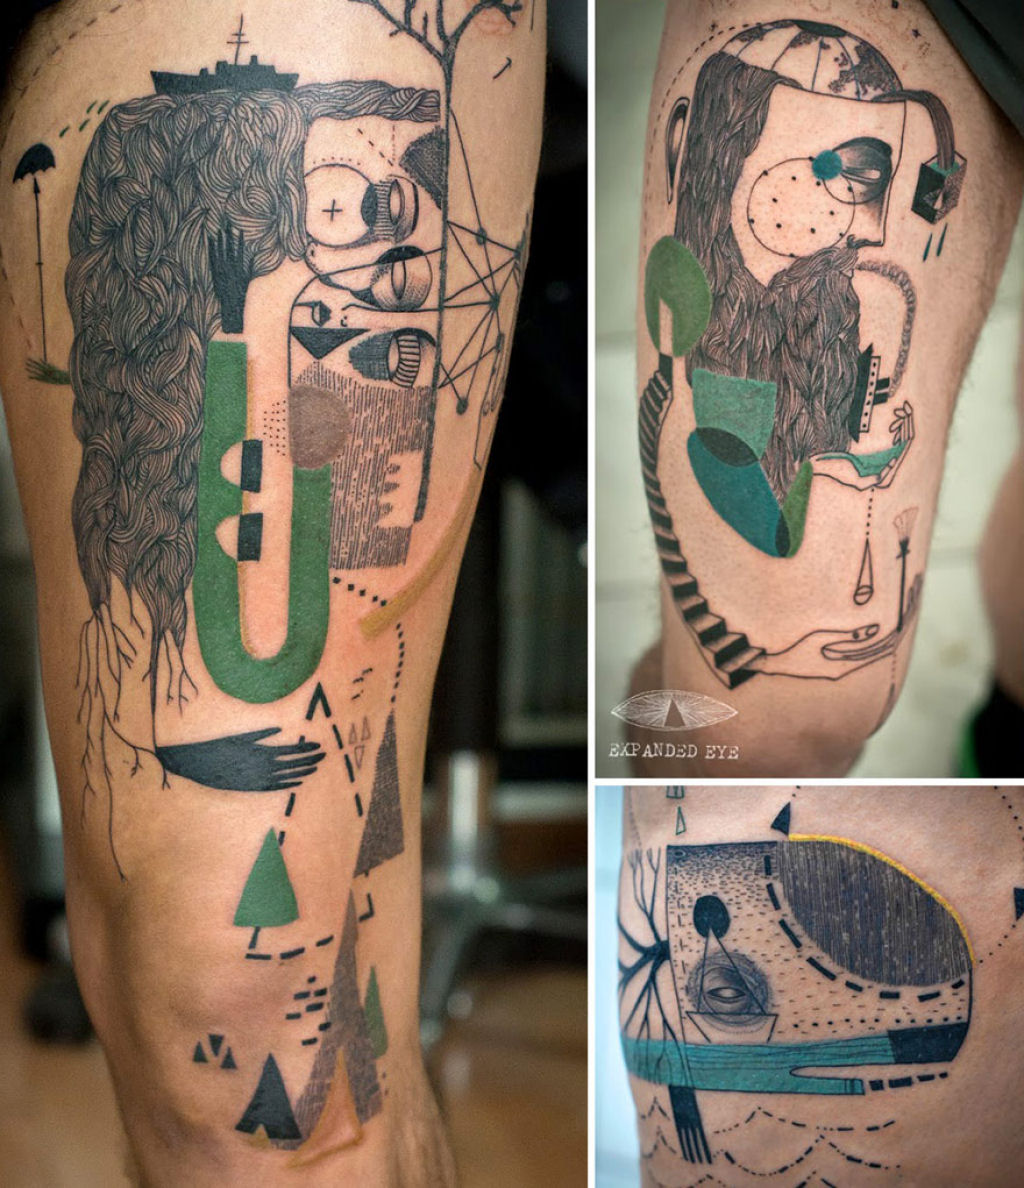 Duo de artistas cria tatuagens cubistas surreais baseadas nas histórias dos clientes 03